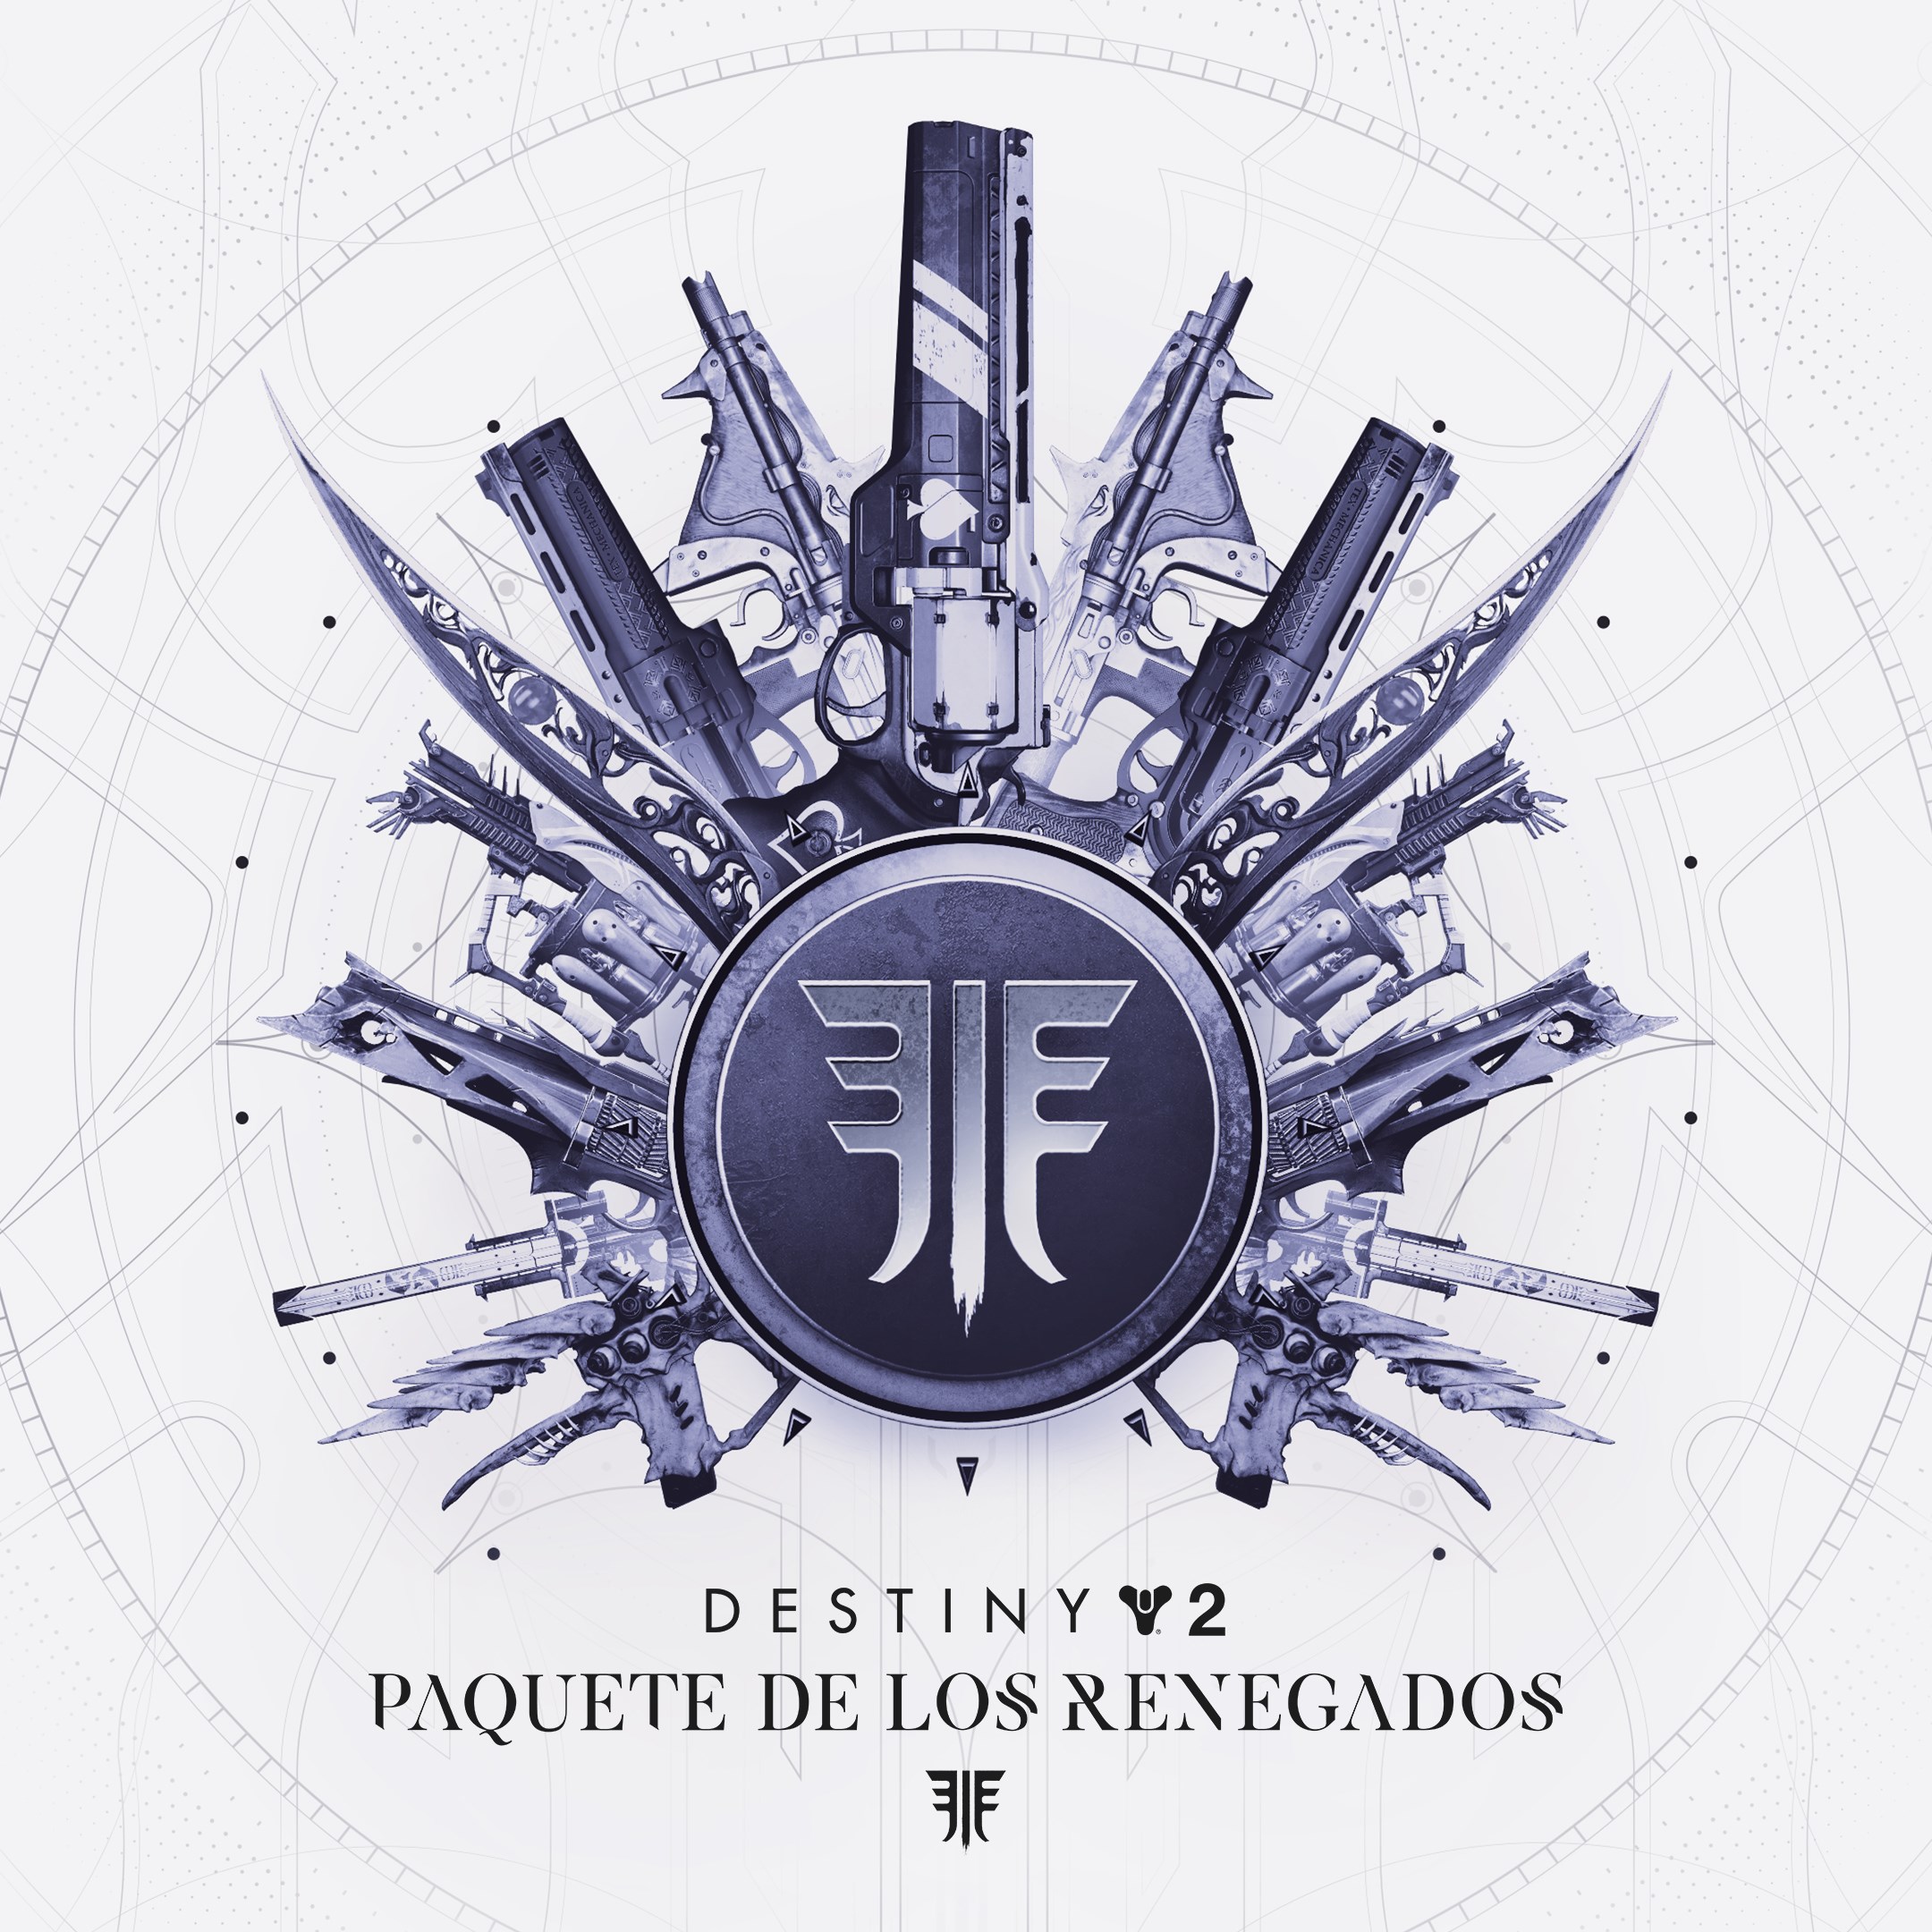 Paquete de Destiny 2: Los Renegados